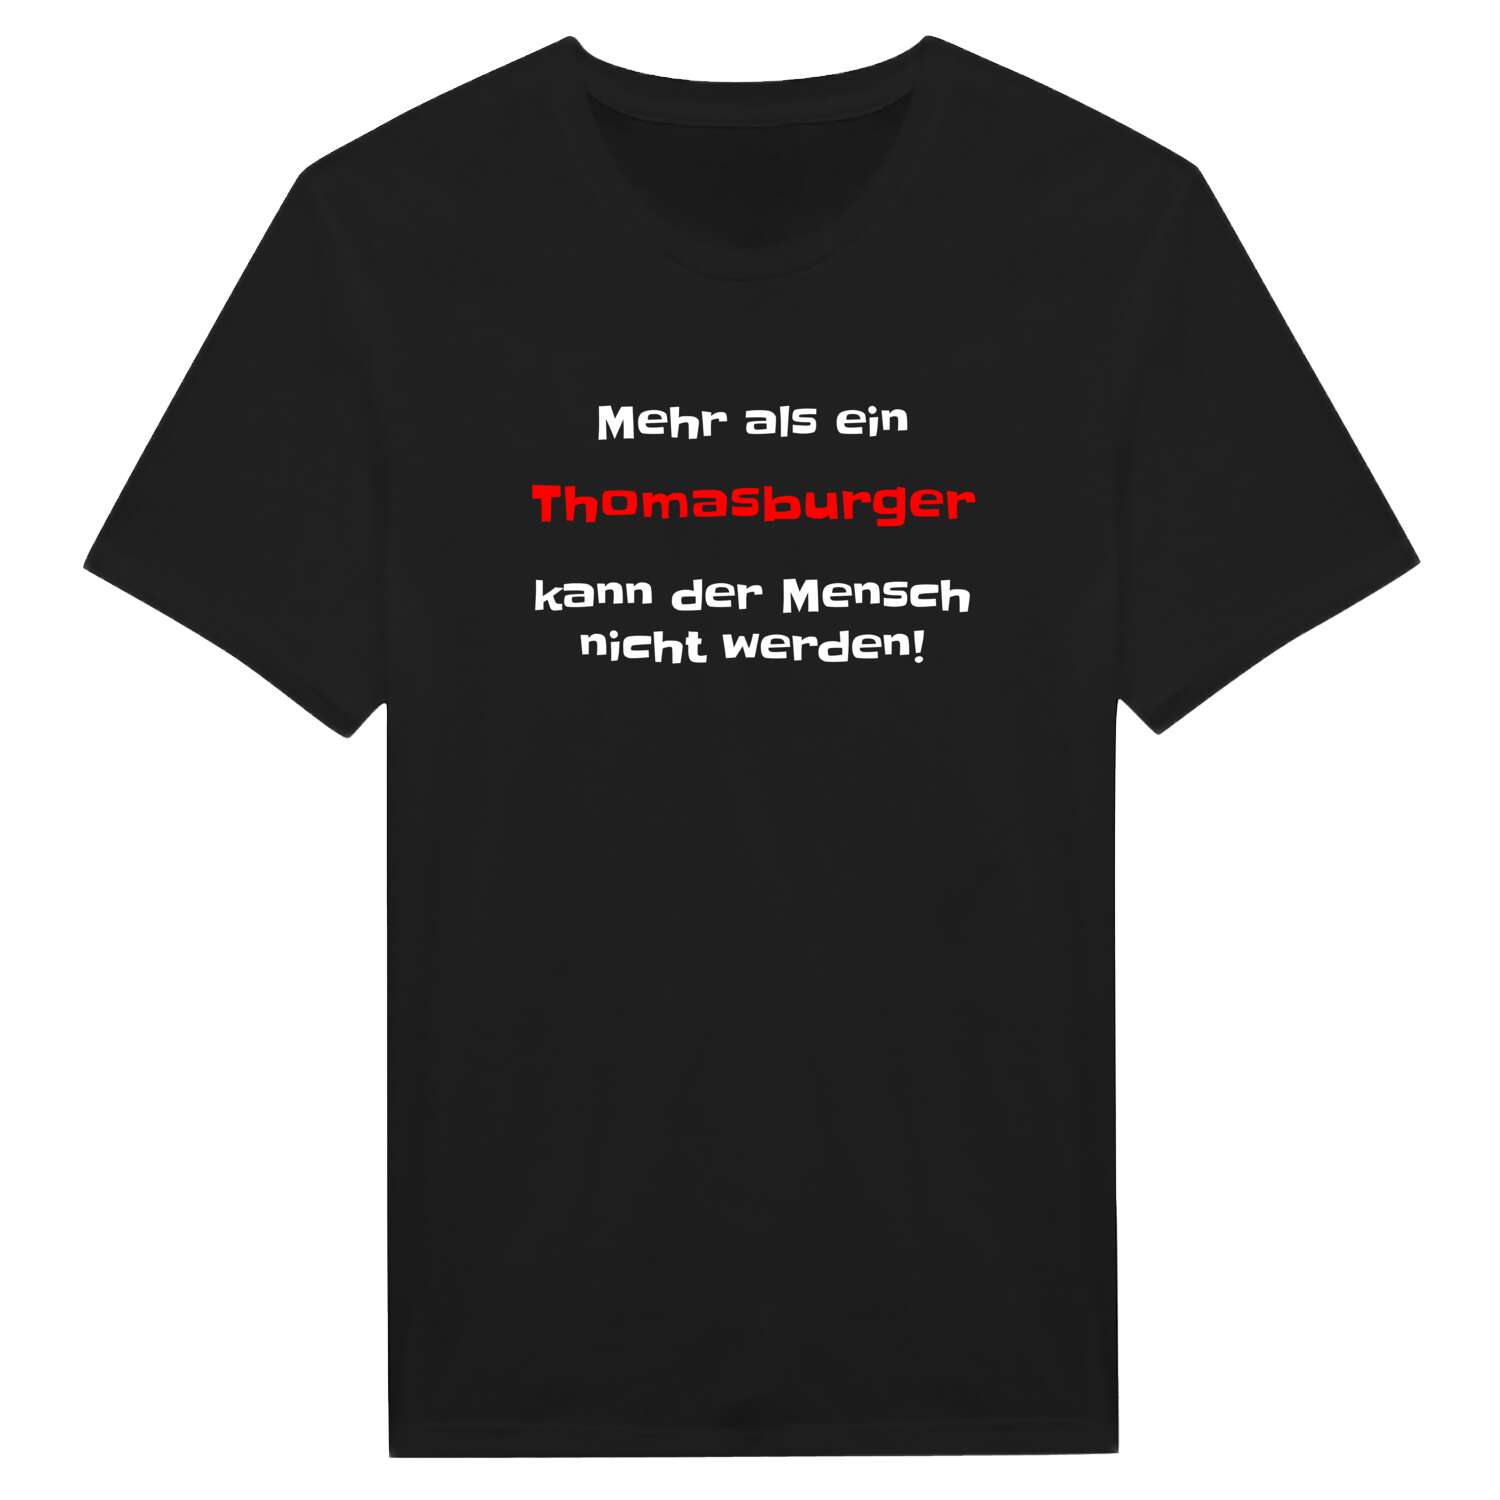 Thomasburg T-Shirt »Mehr als ein«